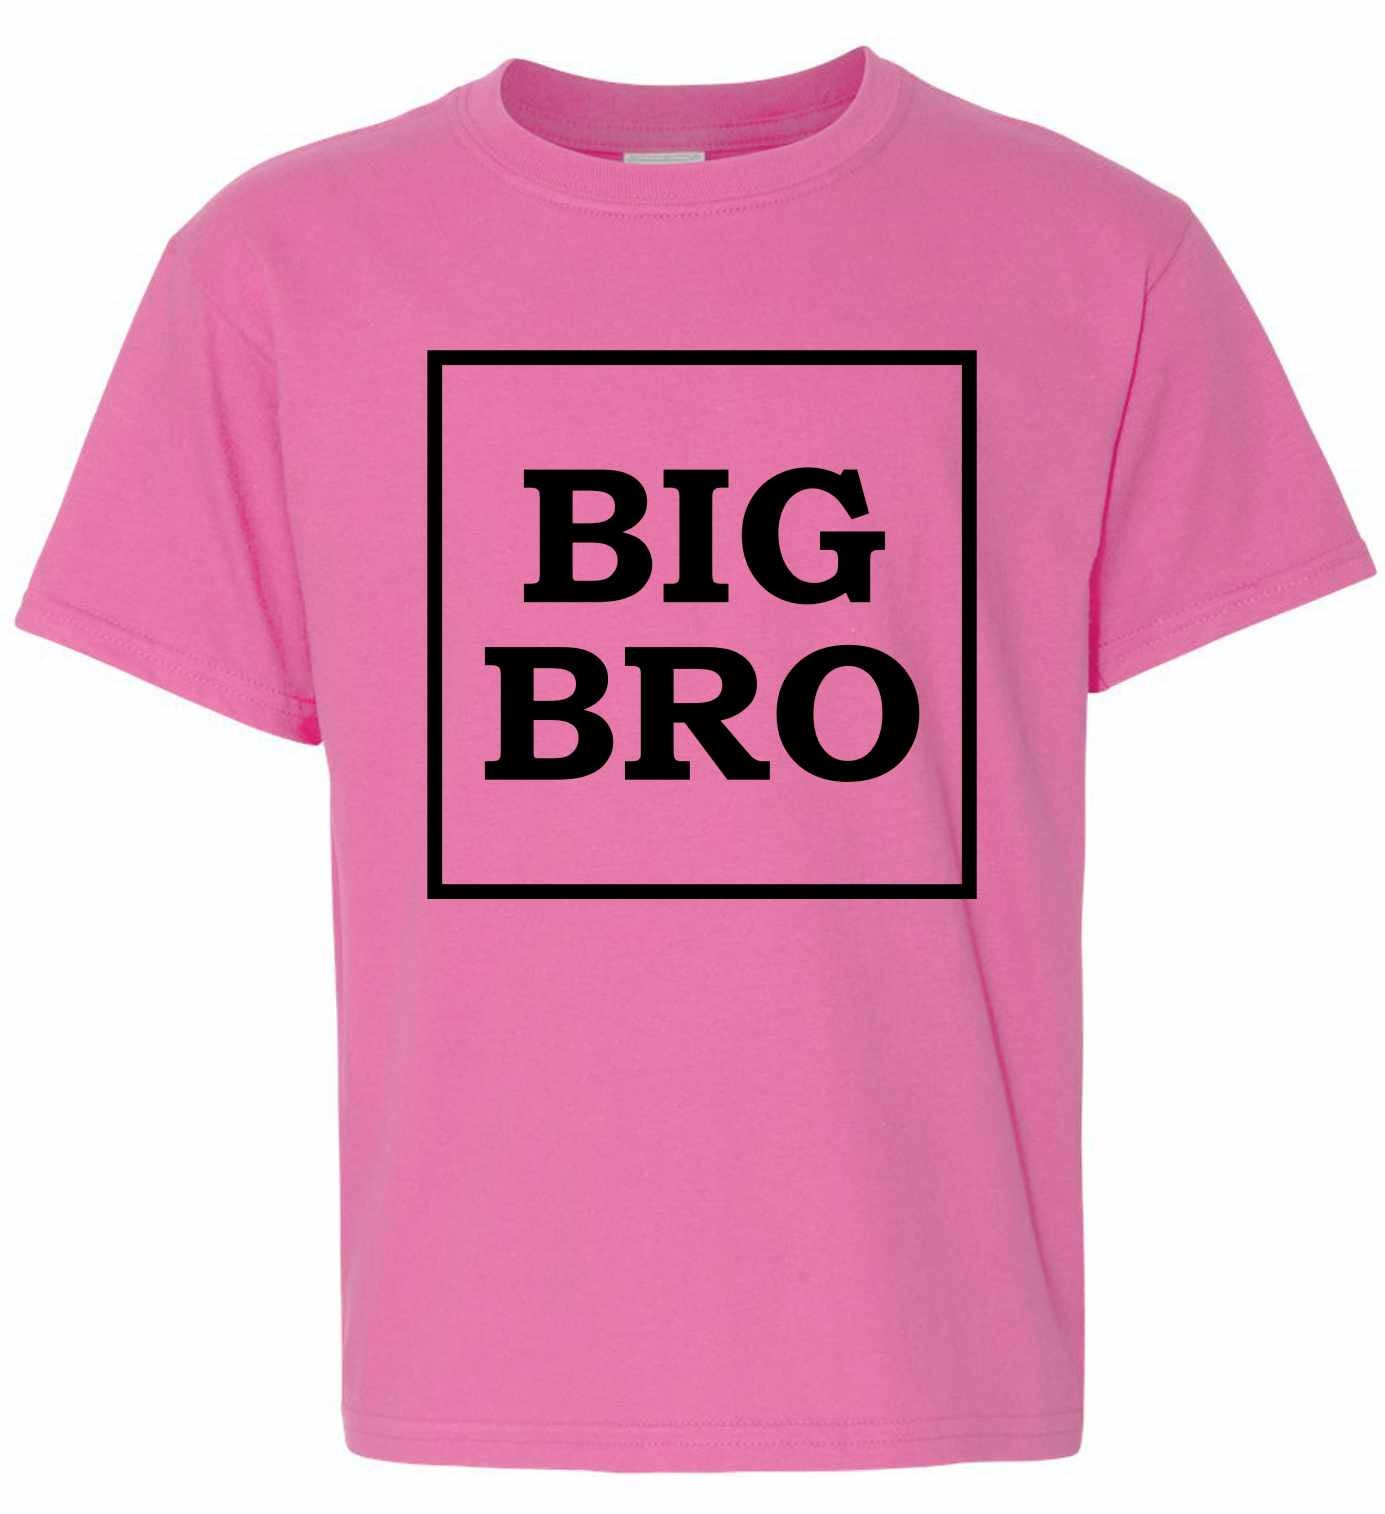 Big Bro on Kids T-Shirt (#1246-201)